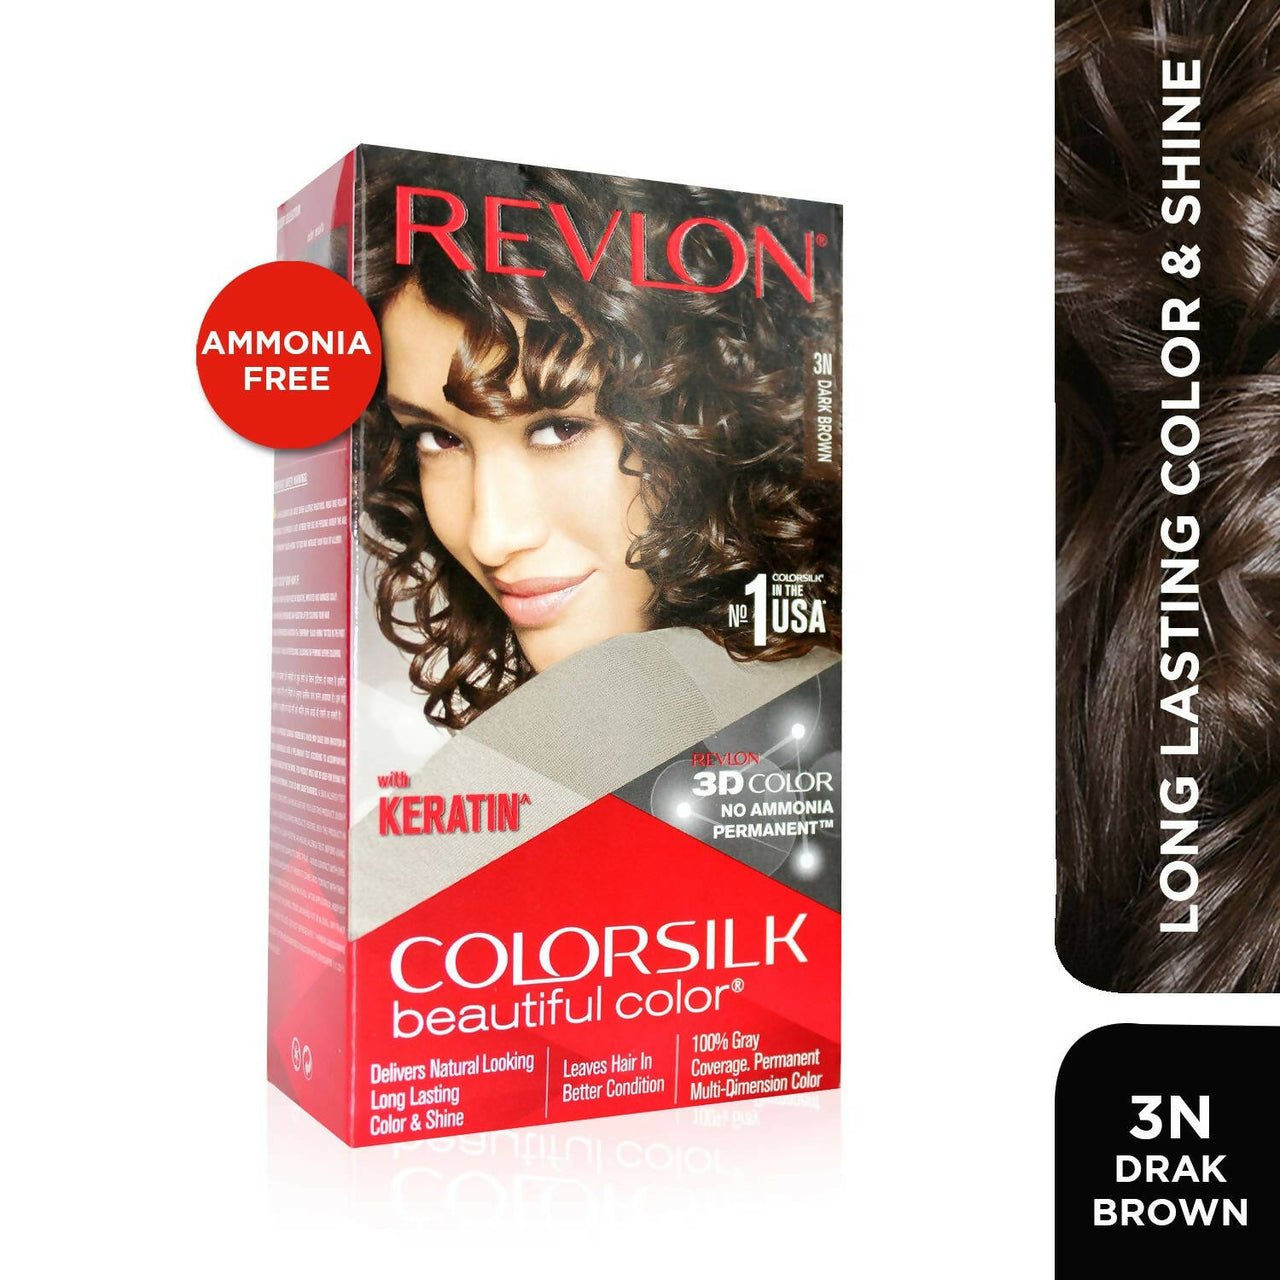 Revlon ColorSilk Beautiful Color - Dark Brown 3N - Distacart